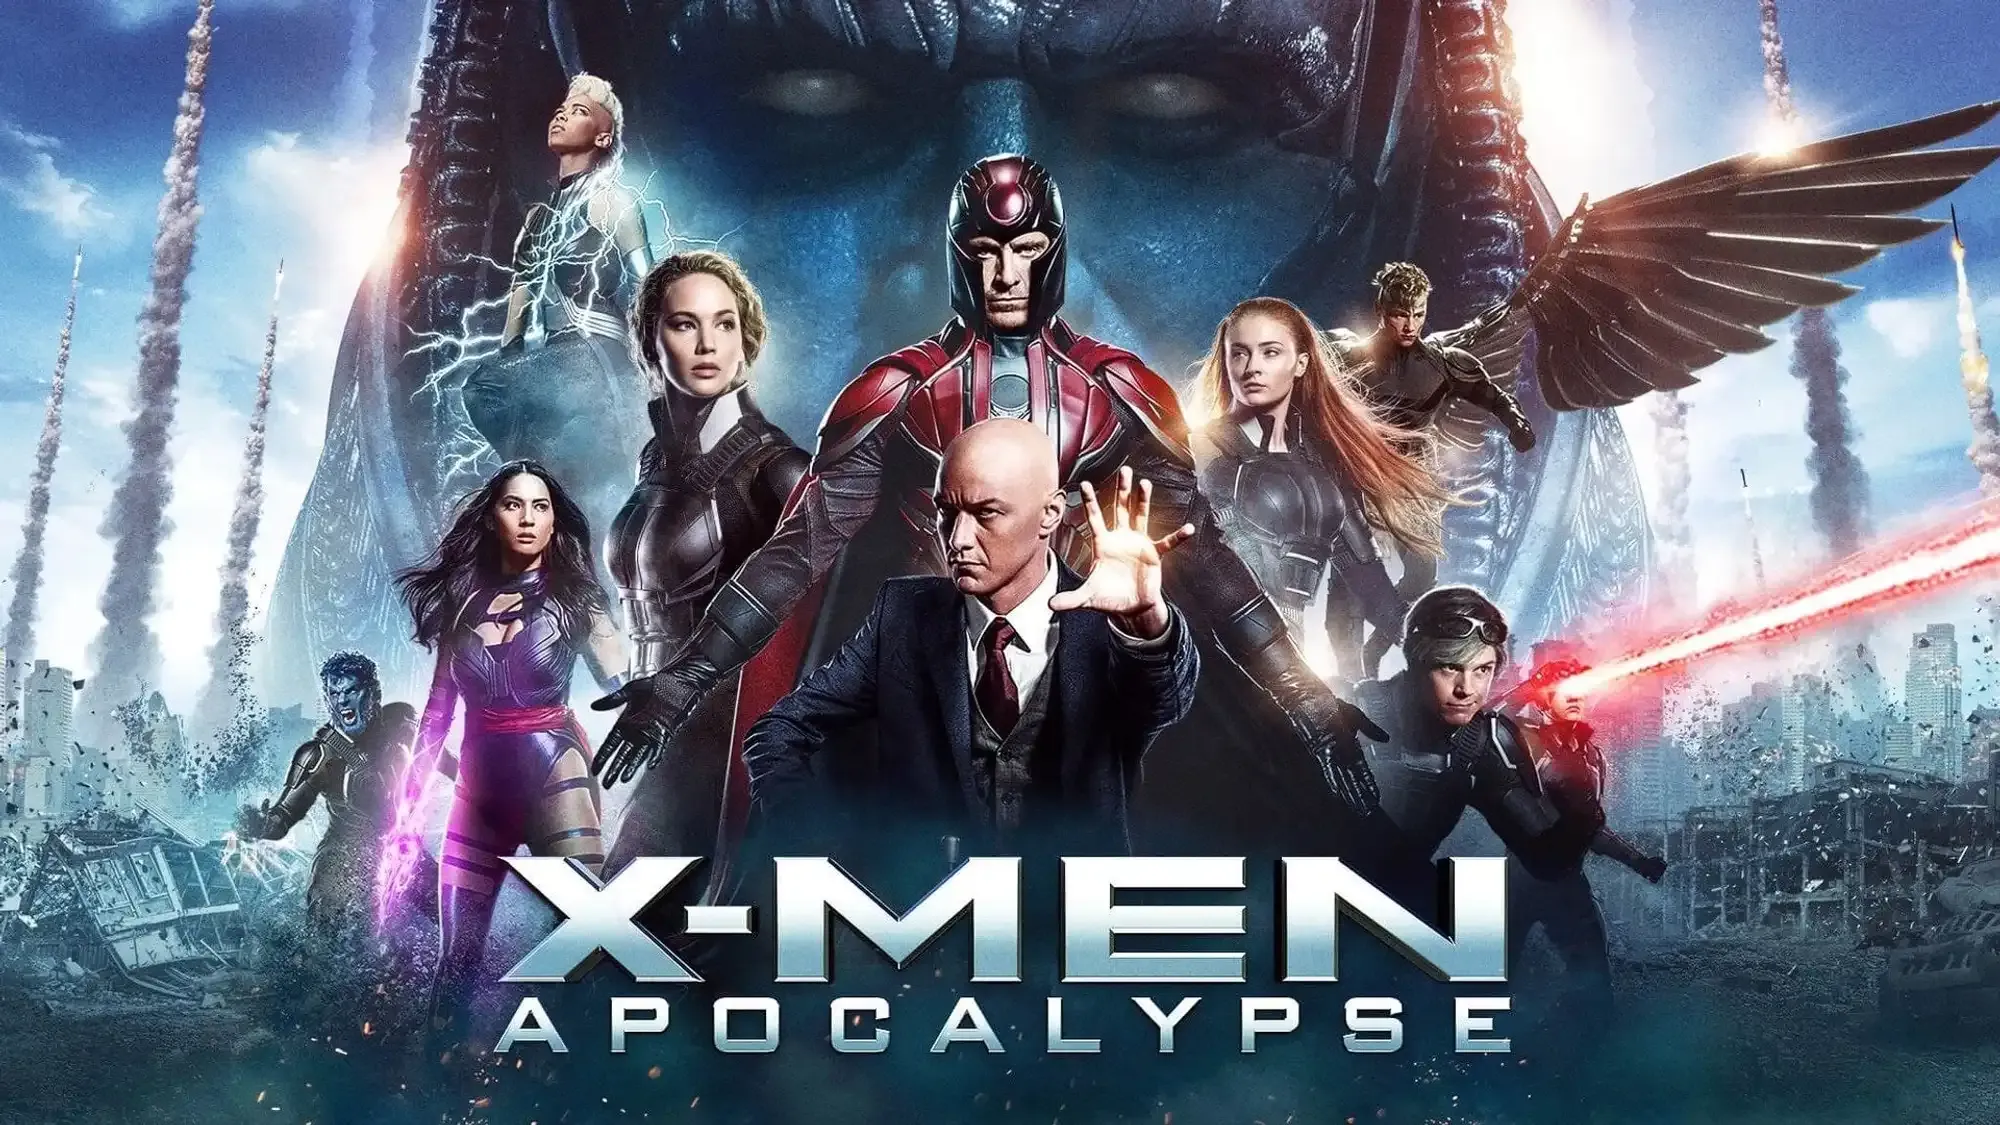 X-Men: Apocalypse movie review